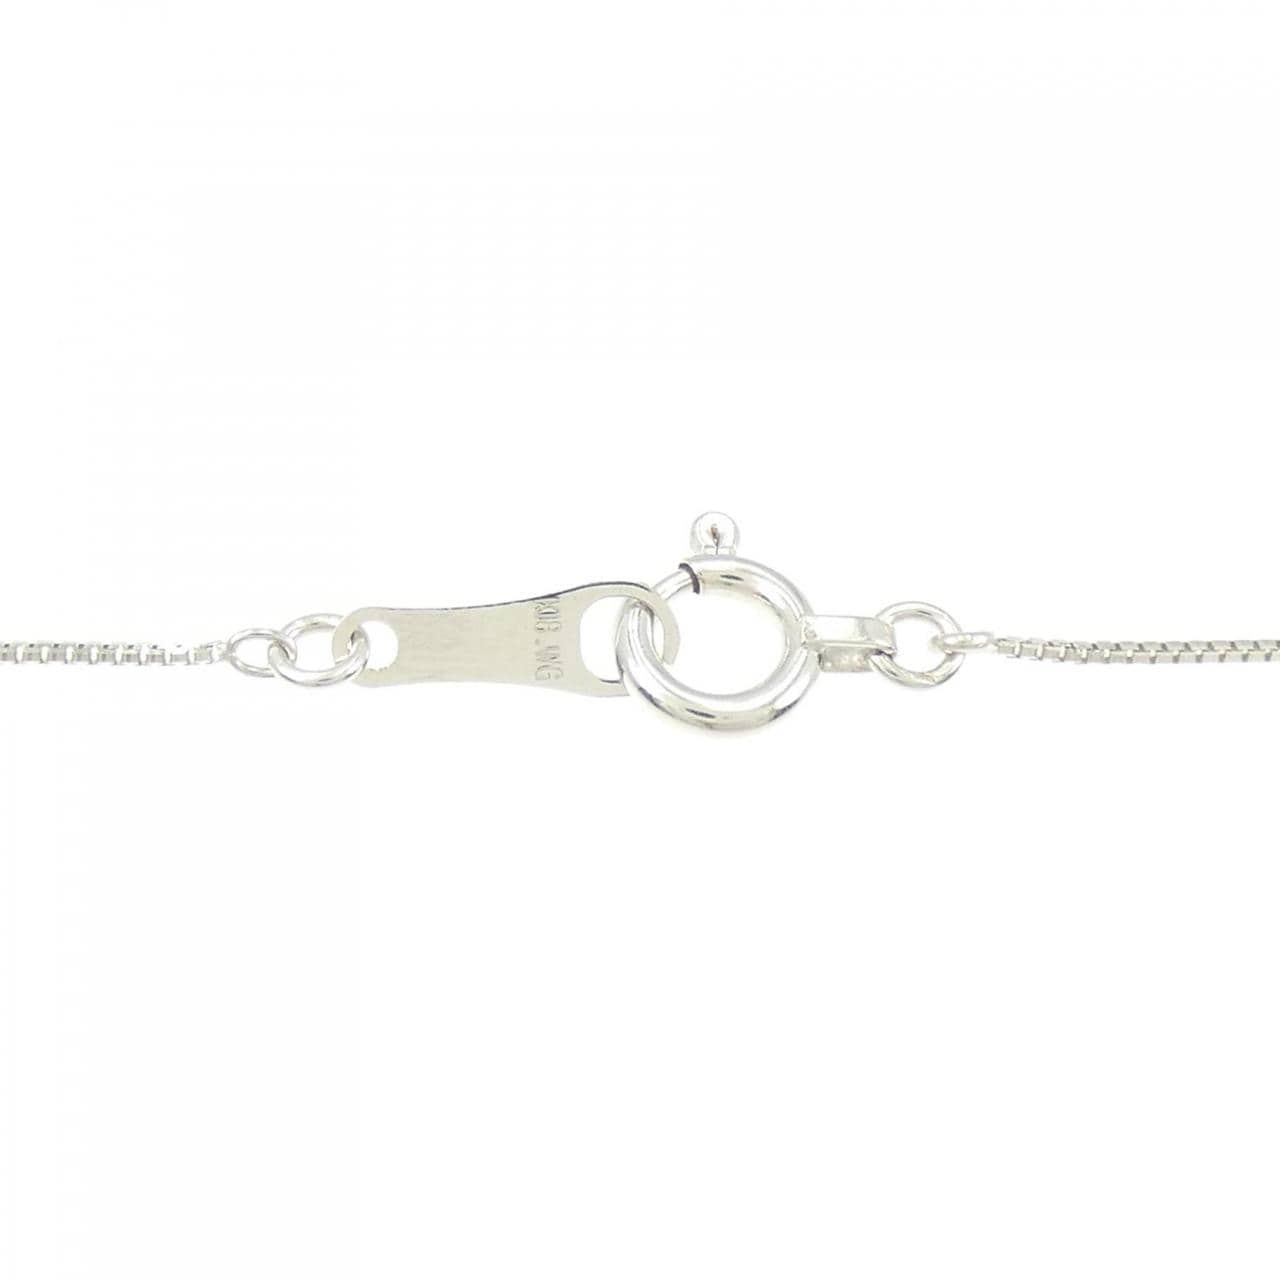 K18WG Horseshoe Citrine Necklace